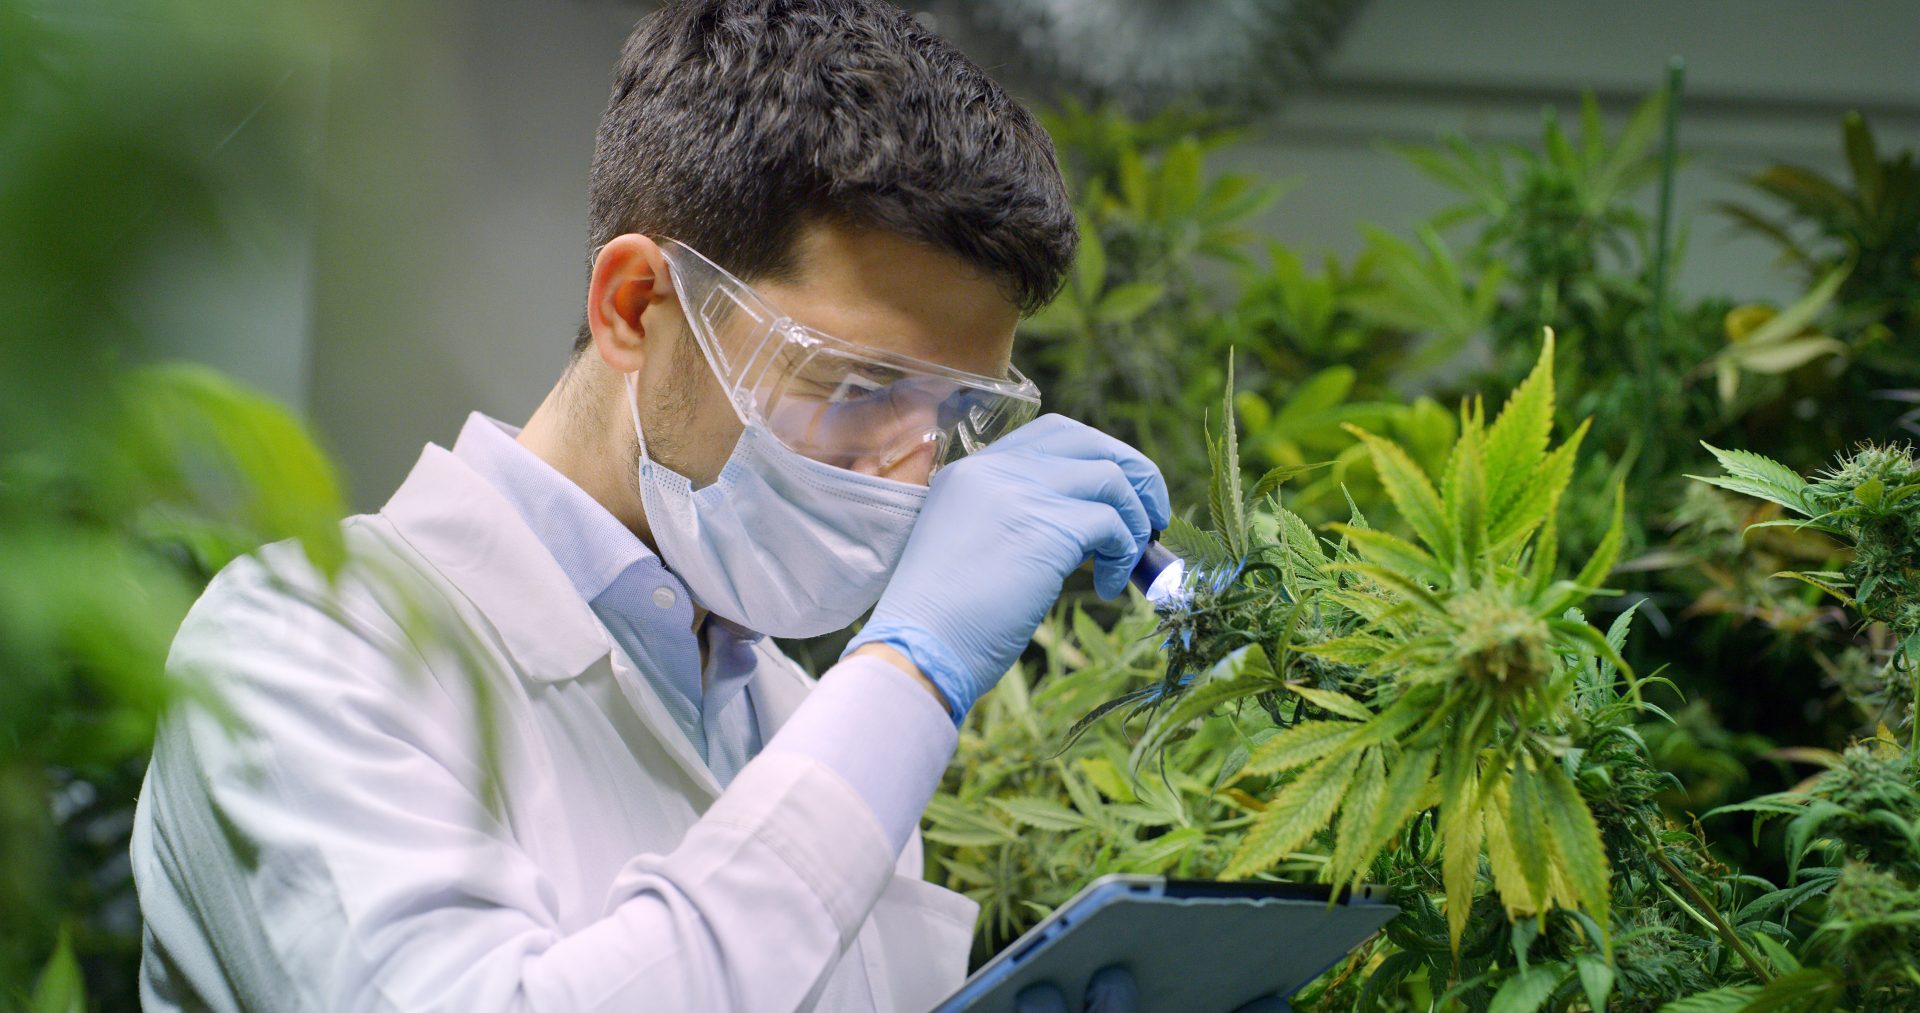 Cannabis Technician Inspecting Freshly grown cannabis